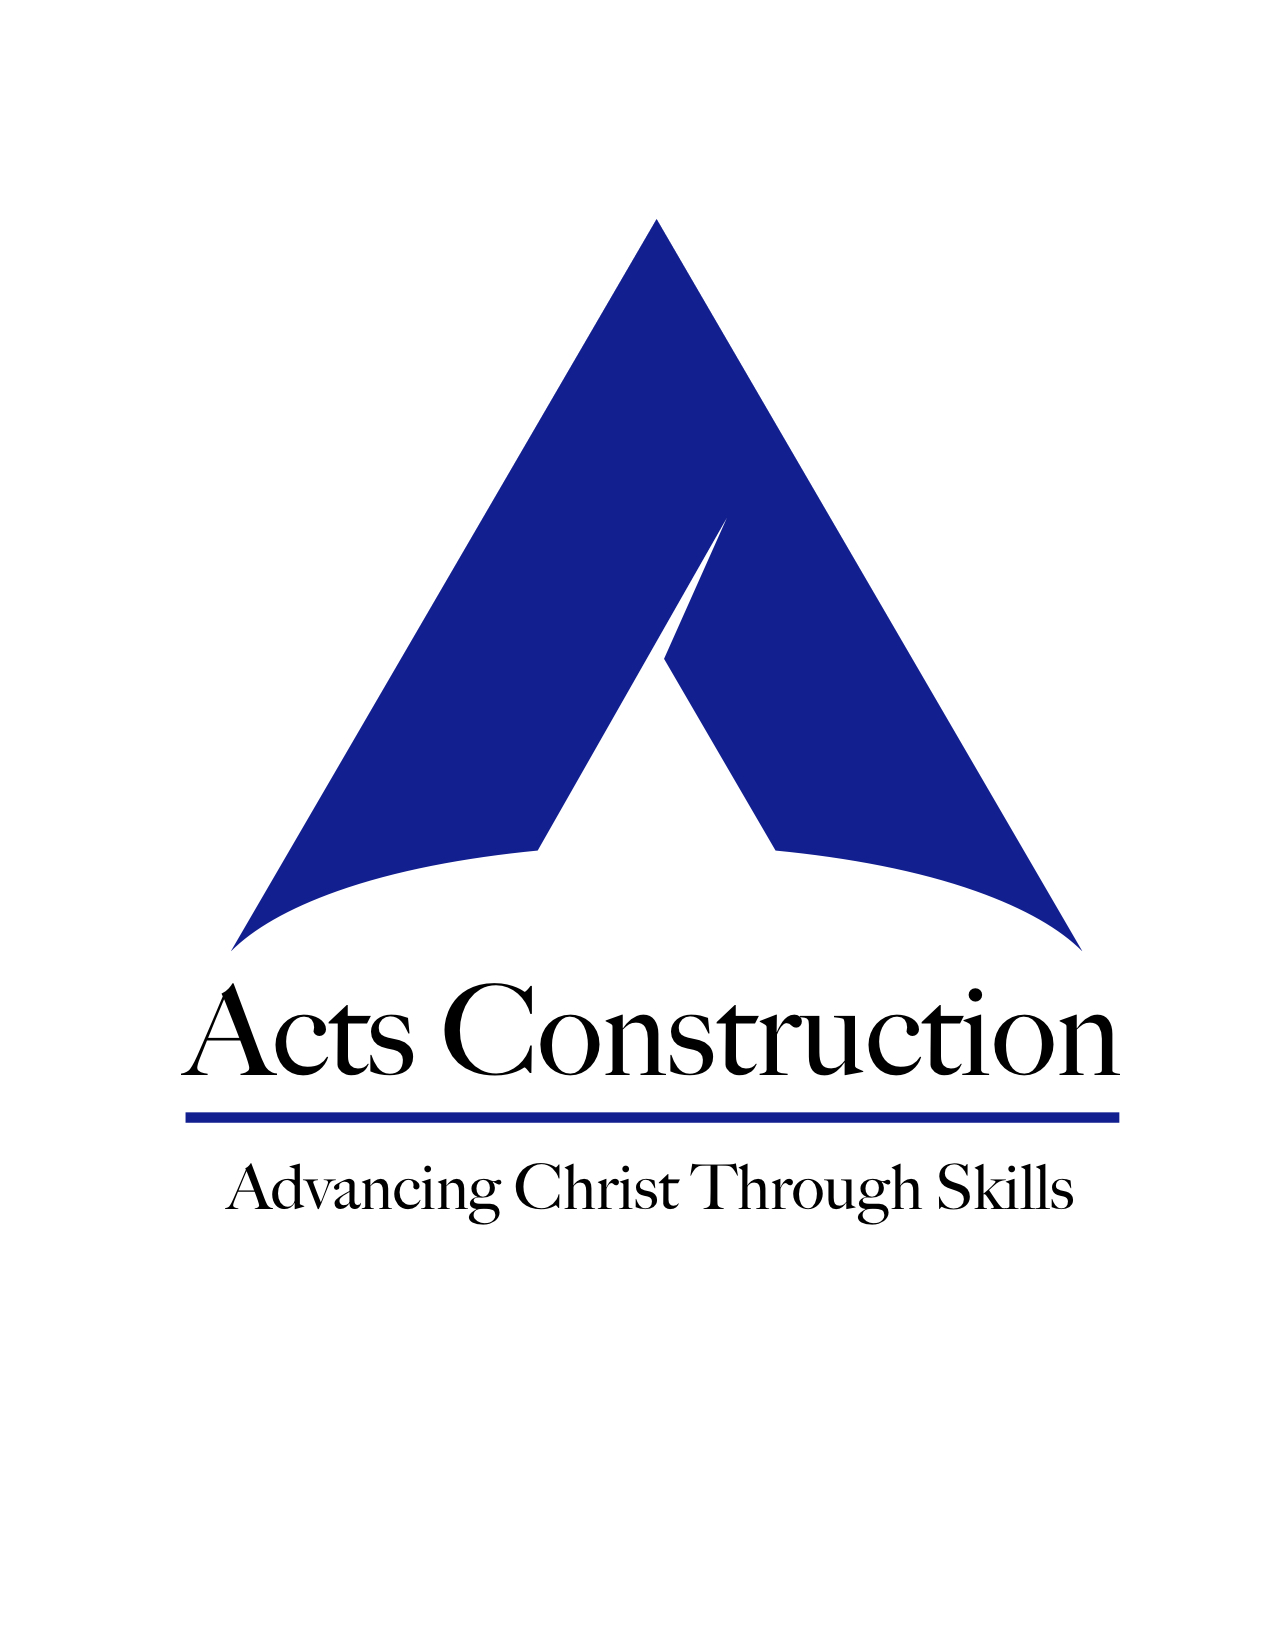 Acts Construction LLC company logo